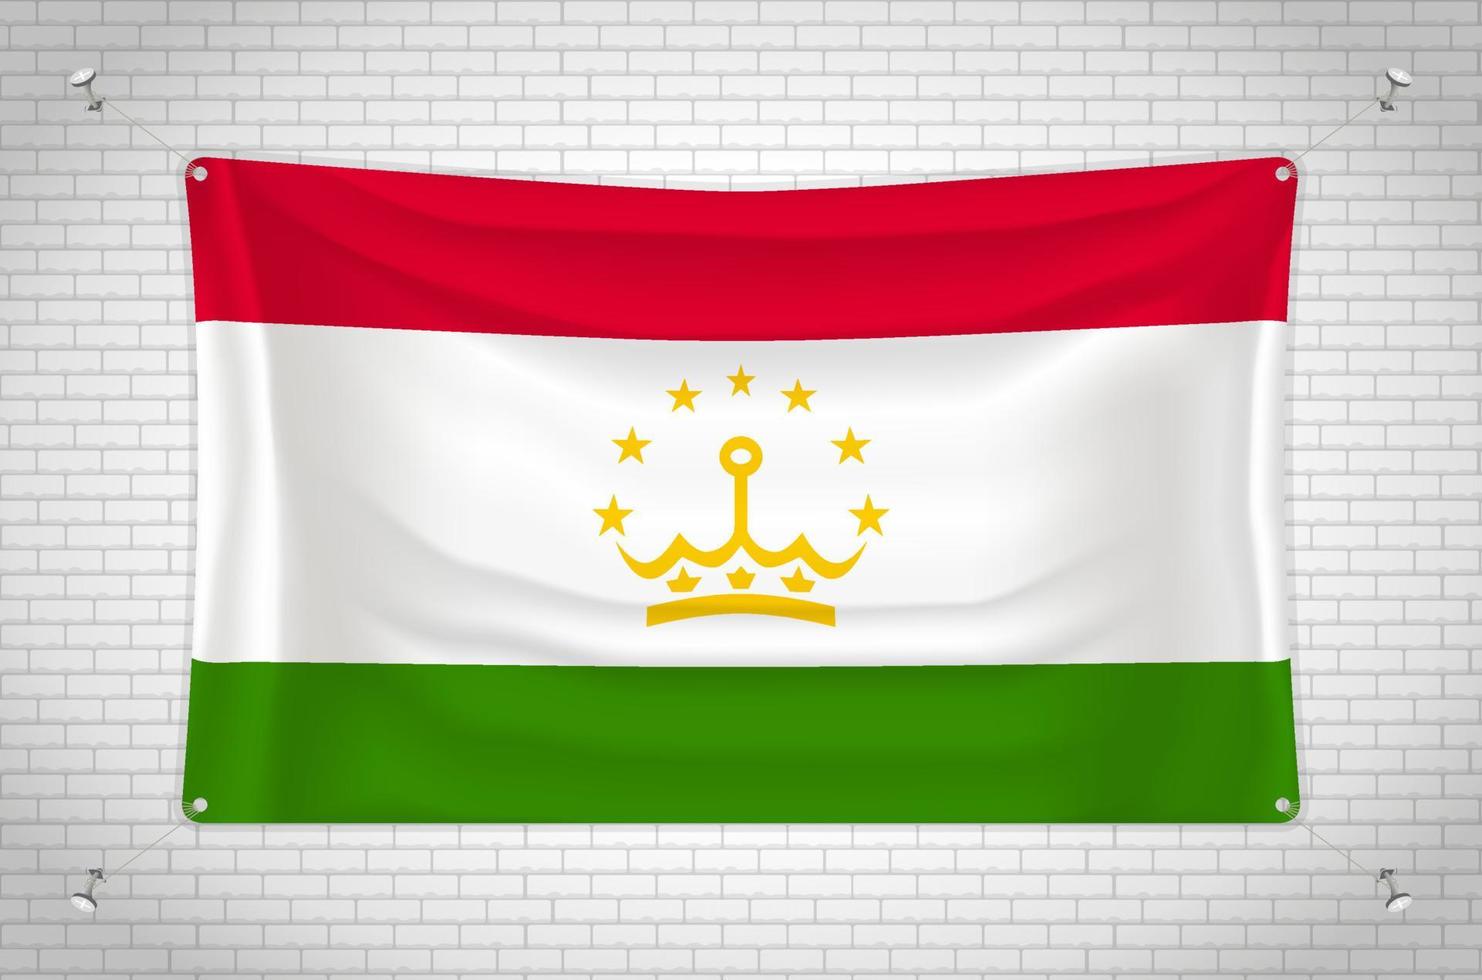 bandeira do tajiquistão pendurada na parede de tijolos. desenho 3D. bandeira pendurada na parede. desenhando ordenadamente em grupos em camadas separadas para facilitar a edição. vetor